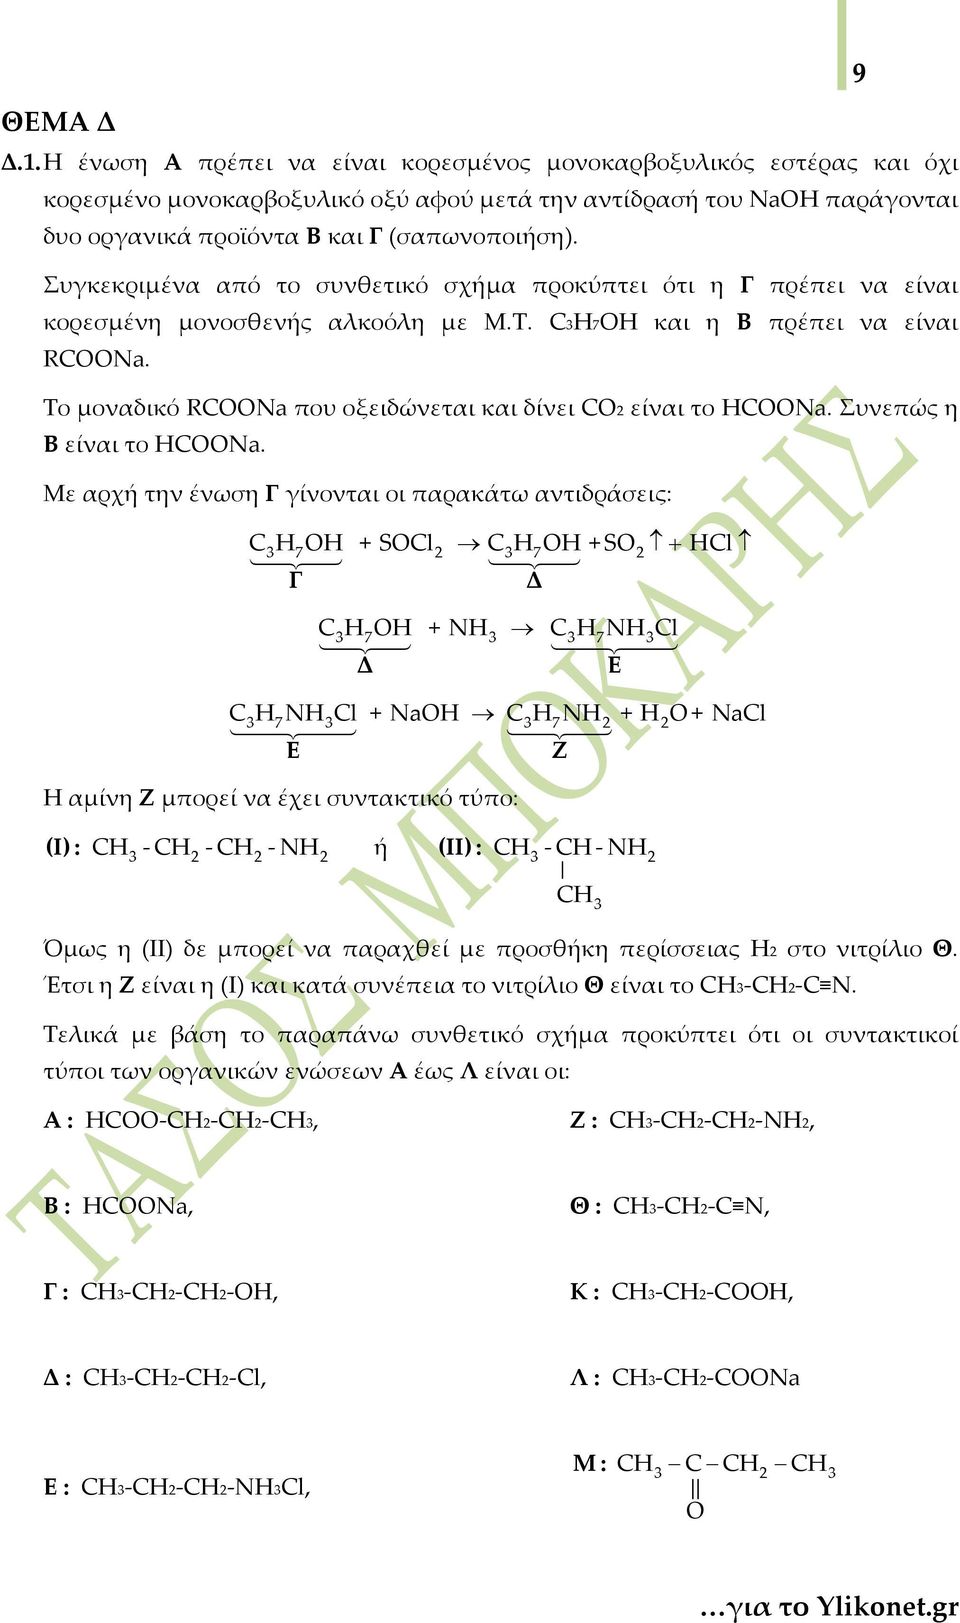 Το μοναδικό RCOONa που οξειδώνεται και δίνει CO είναι το HCOONa. Συνεπώς η Β είναι το HCOONa.